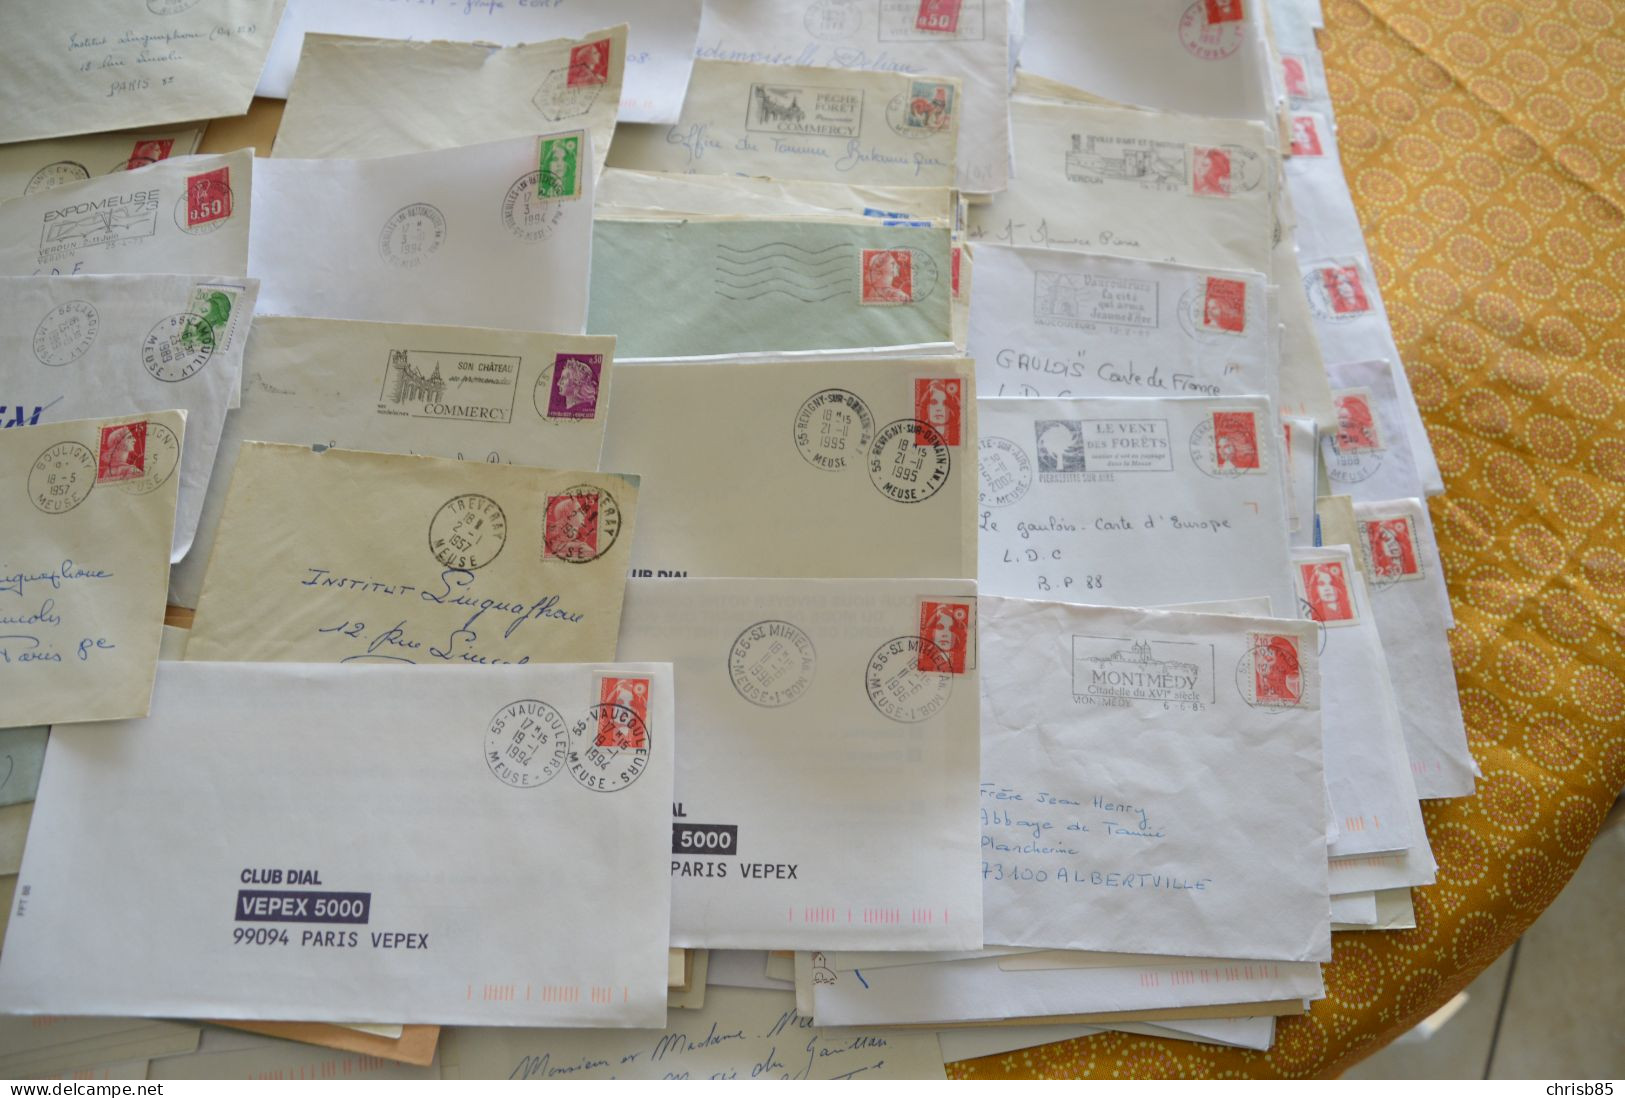 Lot années 1950 1990 oblitérations Département de la MEUSE 55 environ 700 Enveloppes entières